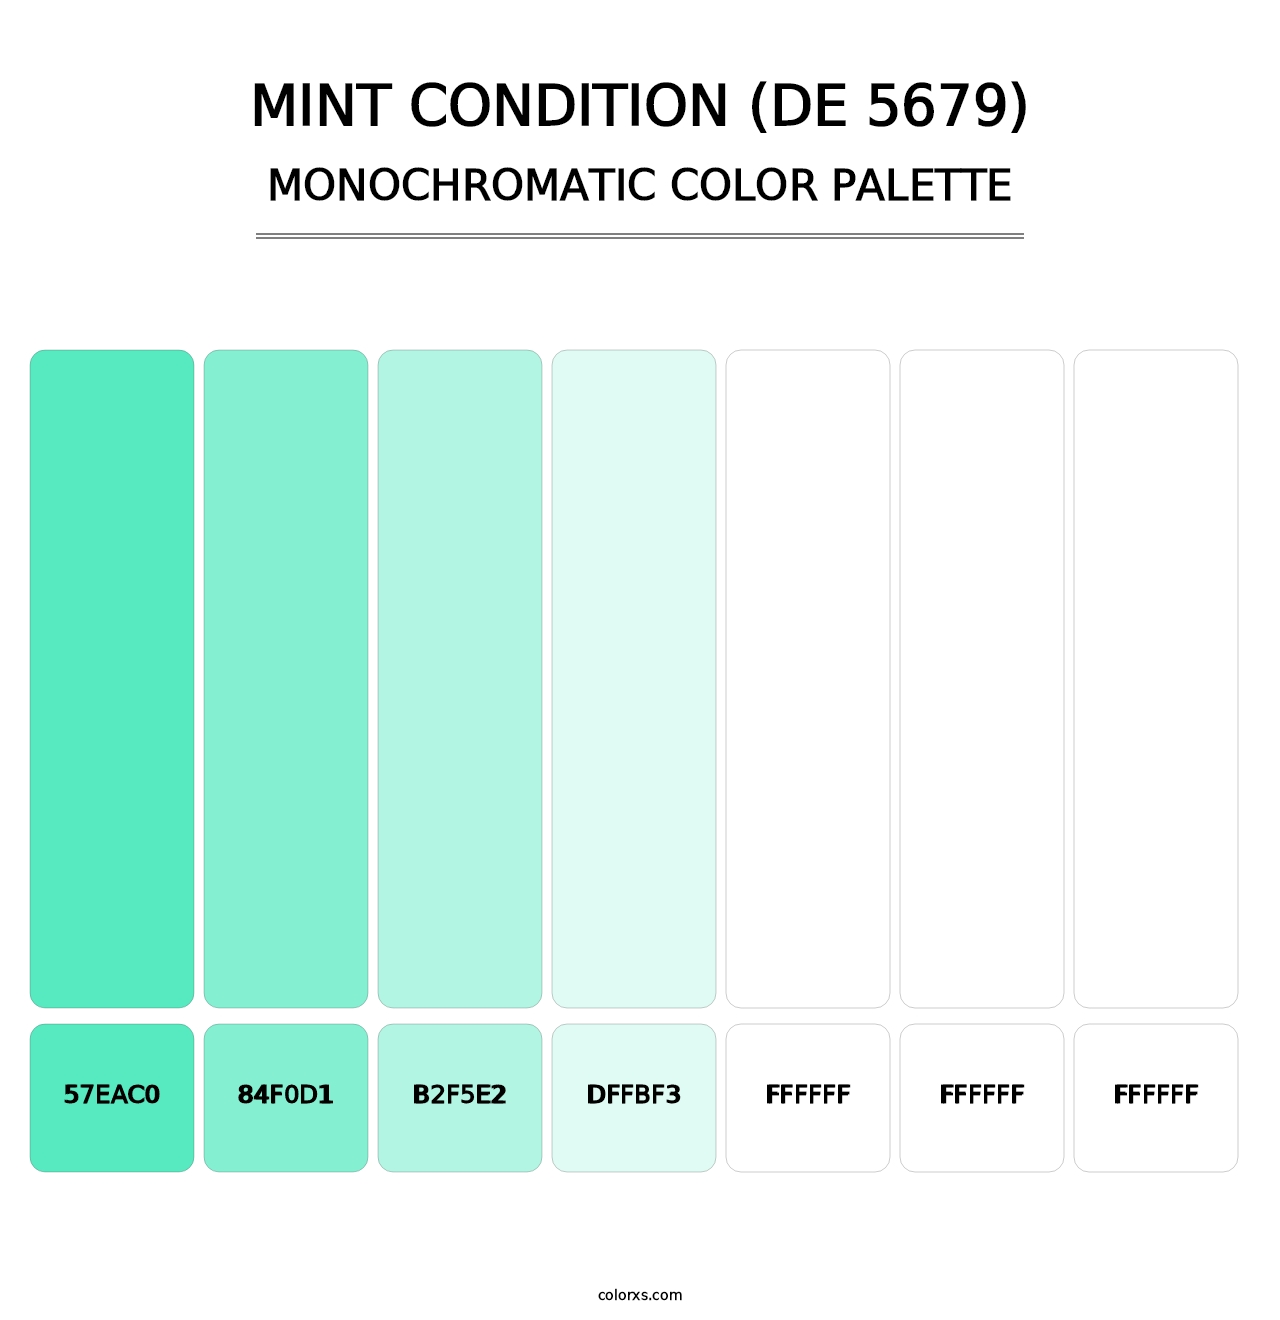 Mint Condition (DE 5679) - Monochromatic Color Palette